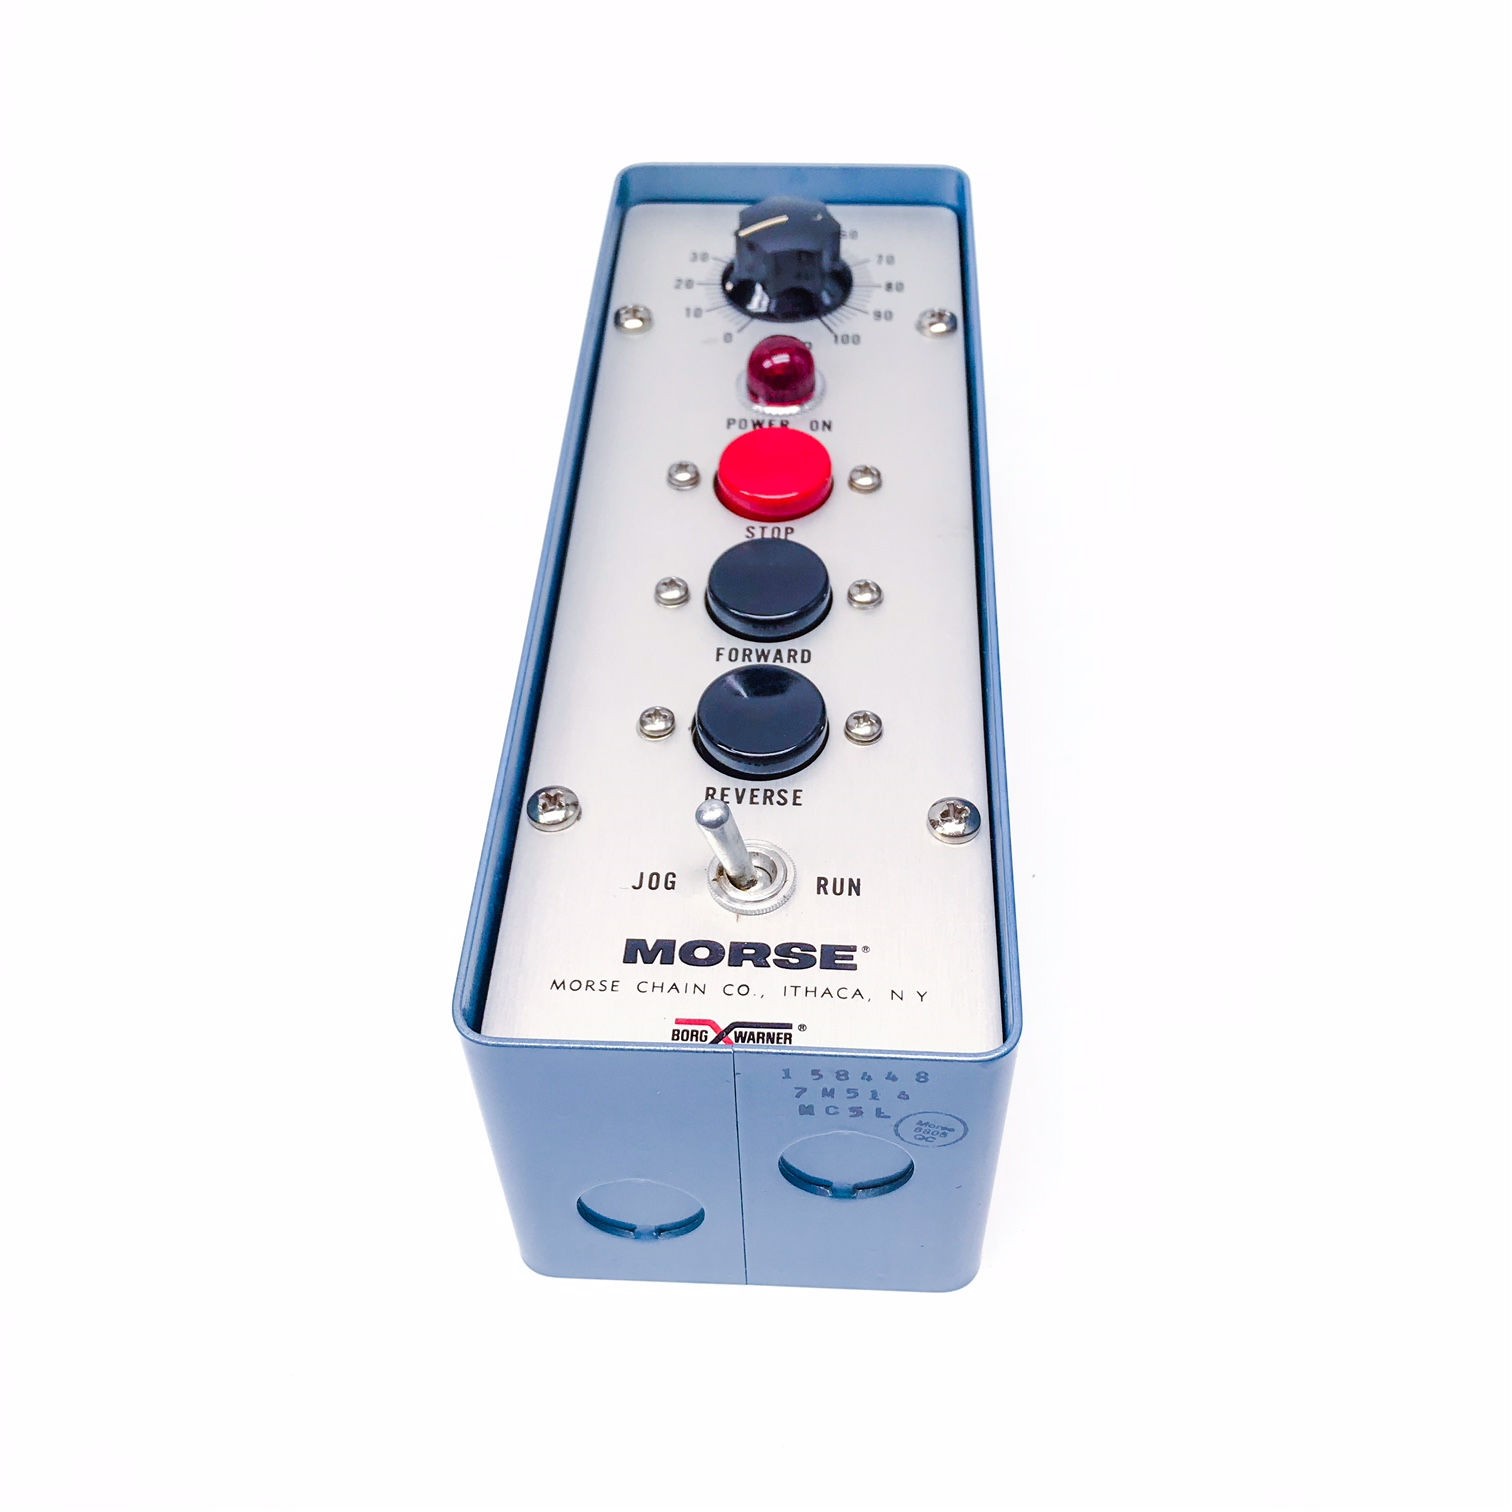 158448 Morse Chain MA Series Remote Control Panel 3